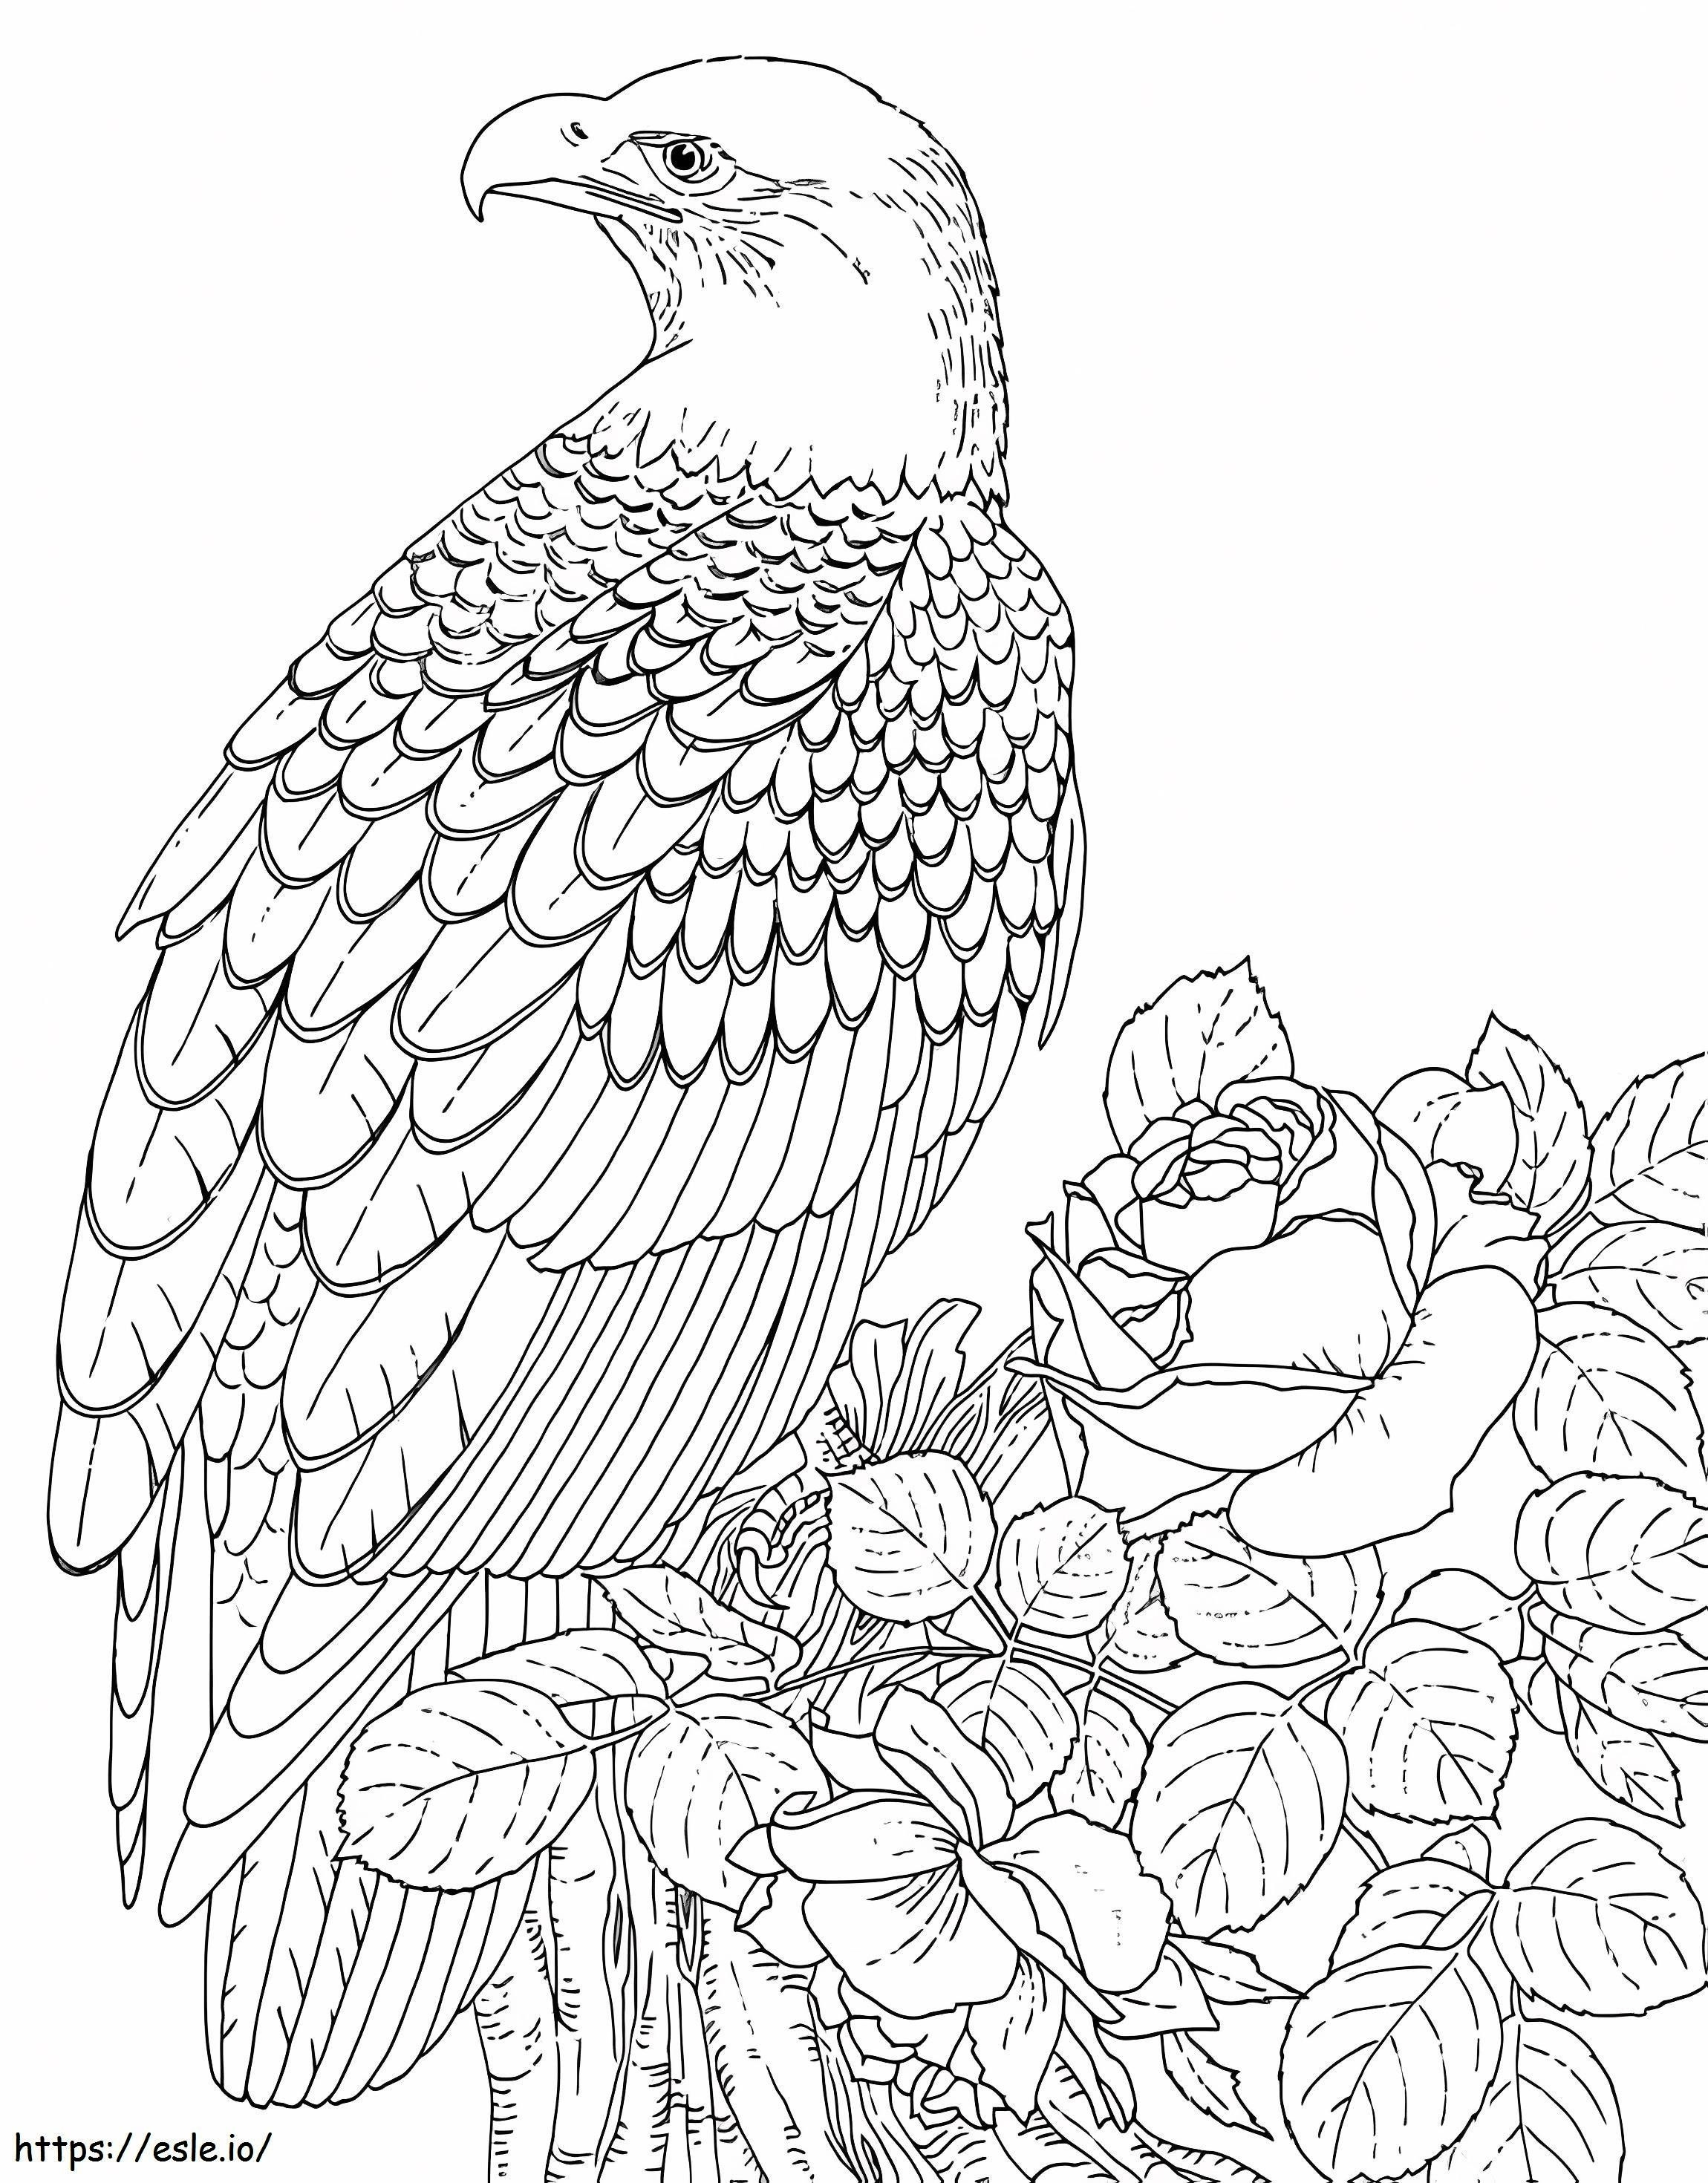 Adler mit Rose und Blättern ausmalbilder